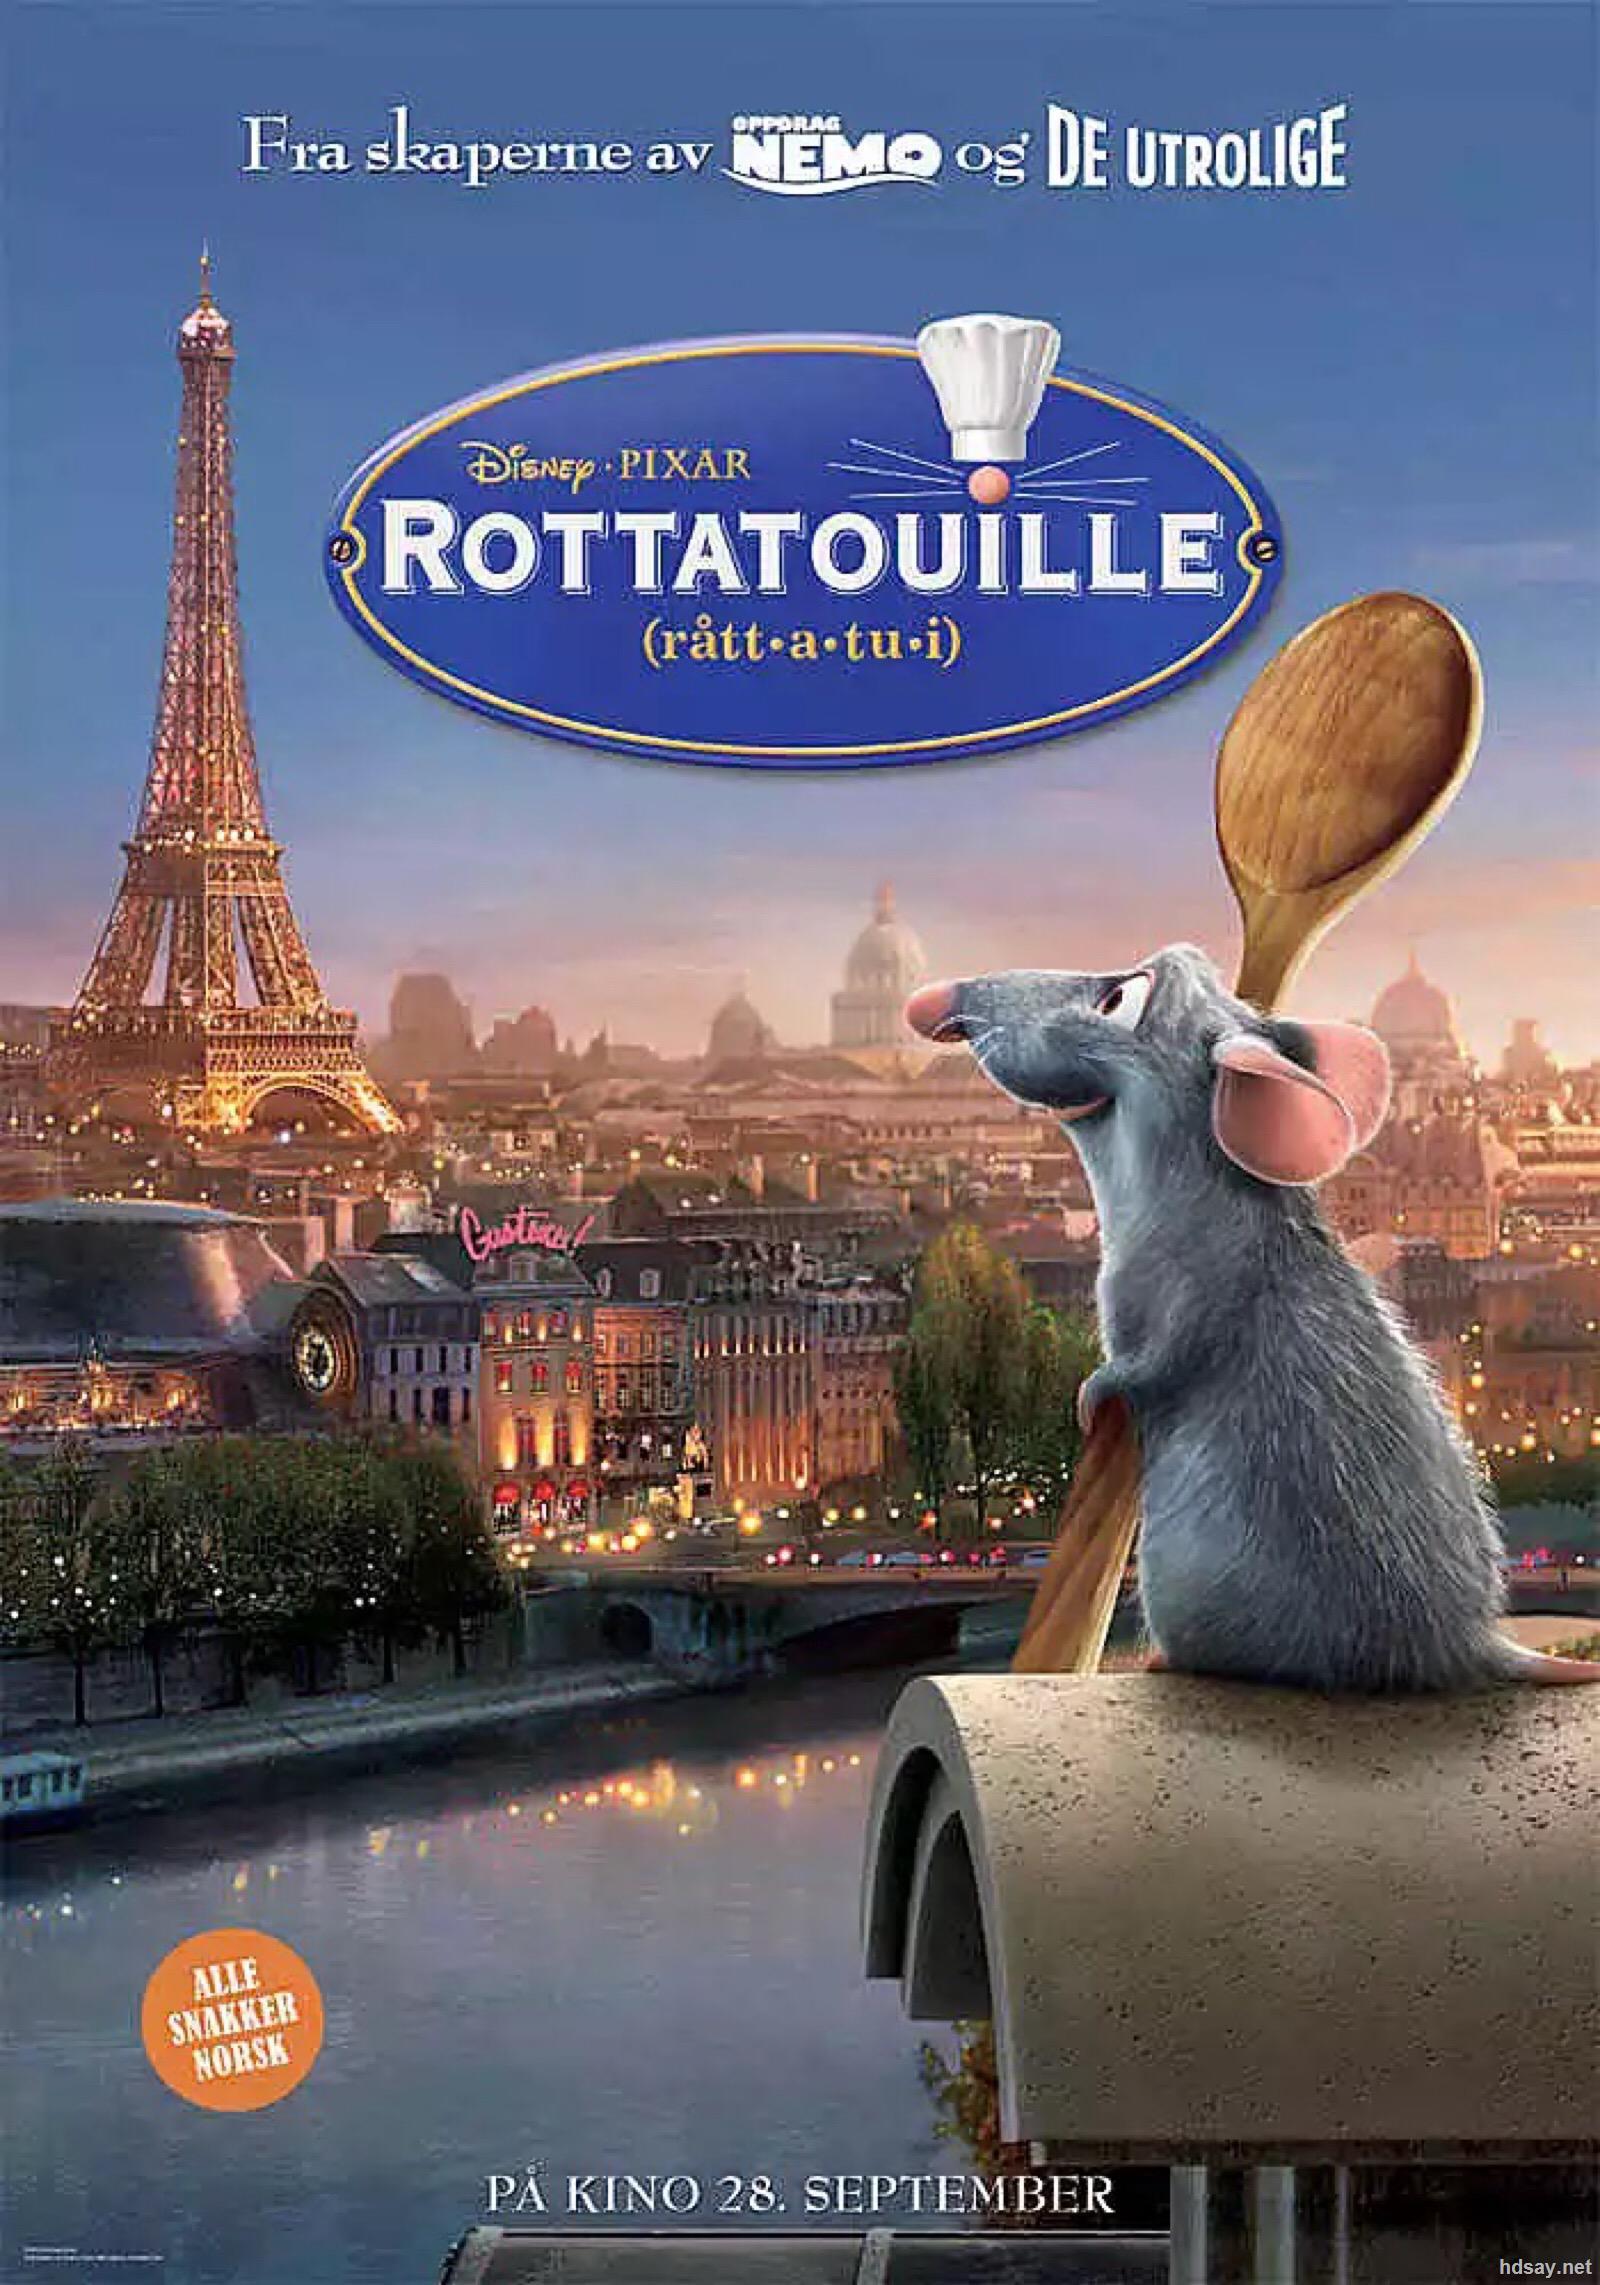 料理鼠王 Ratatouille 壁纸专辑13 - 1366x768 壁纸下载 - 料理鼠王 Ratatouille 壁纸专辑 - 影视壁纸 - V3壁纸站